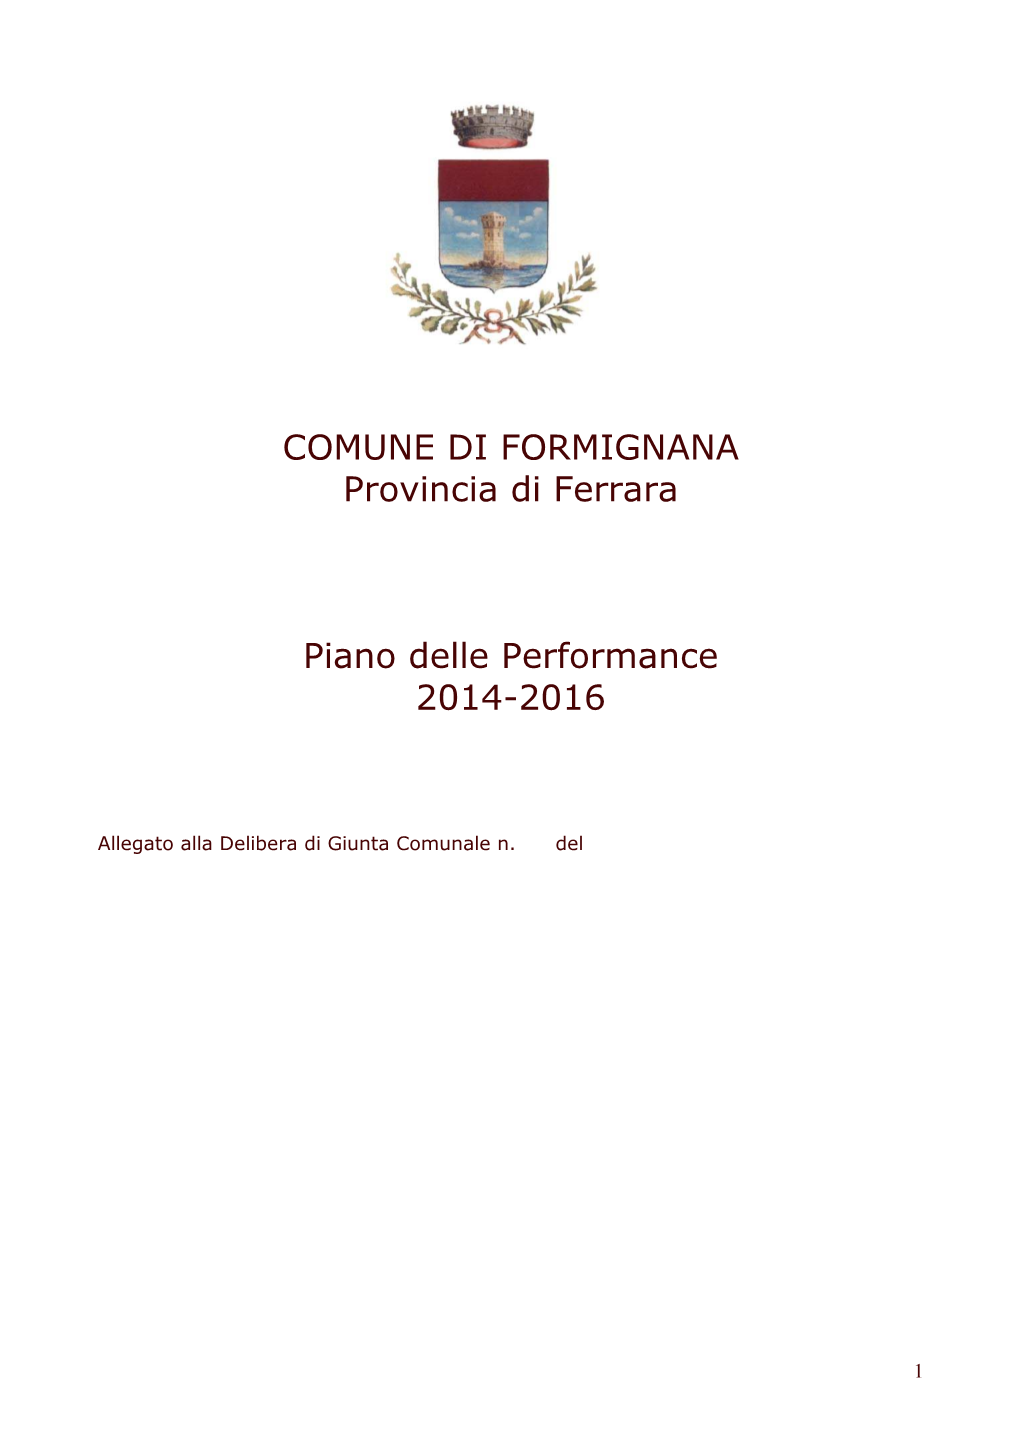 COMUNE DI FORMIGNANA Provincia Di Ferrara Piano Delle Performance